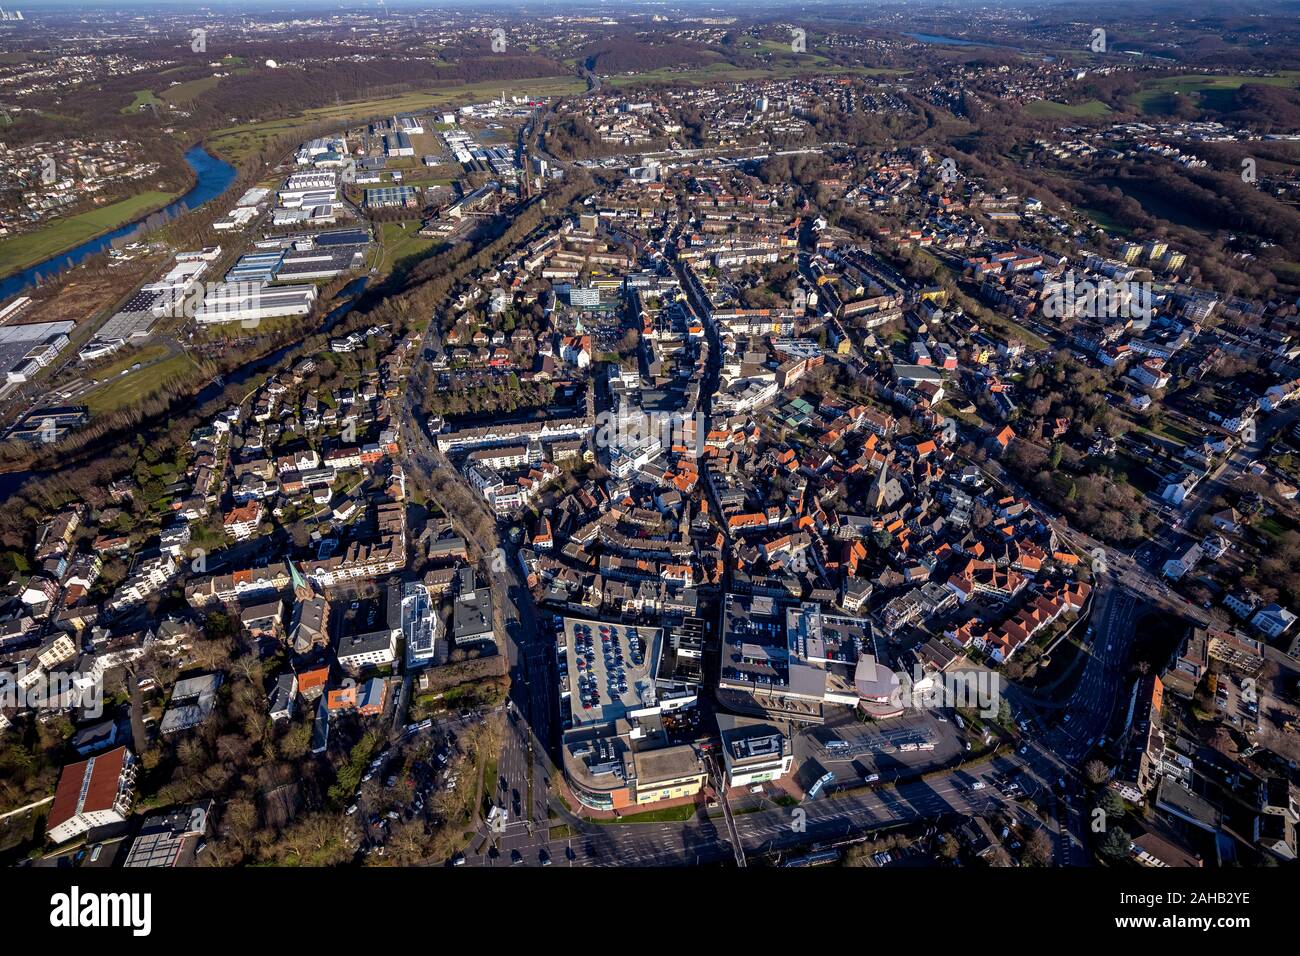 Vue aérienne, vue sur la ville et centre-ville Hattingen, rivière Ruhr Hattingen, Française, district, région de la Ruhr, en Rhénanie du Nord-Westphalie, Allemagne, DE, Eur Banque D'Images